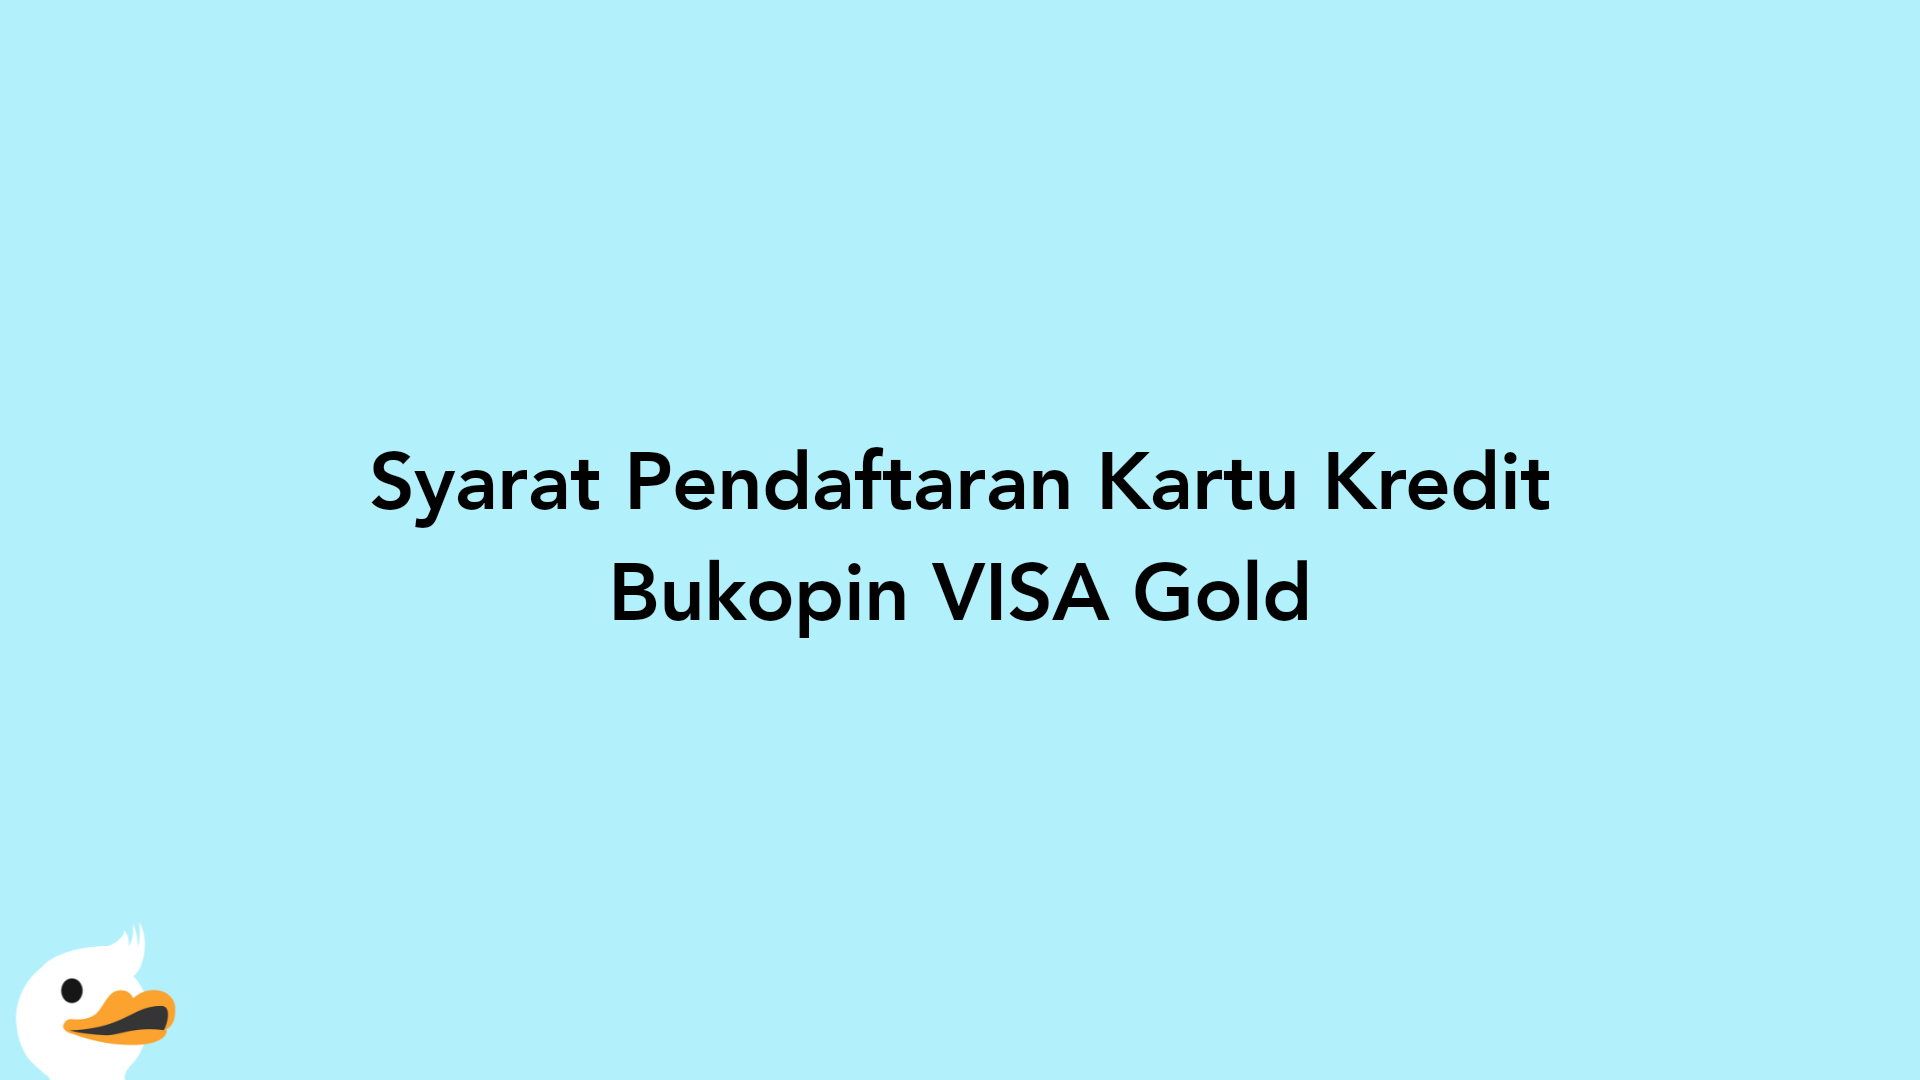 Syarat Pendaftaran Kartu Kredit Bukopin VISA Gold